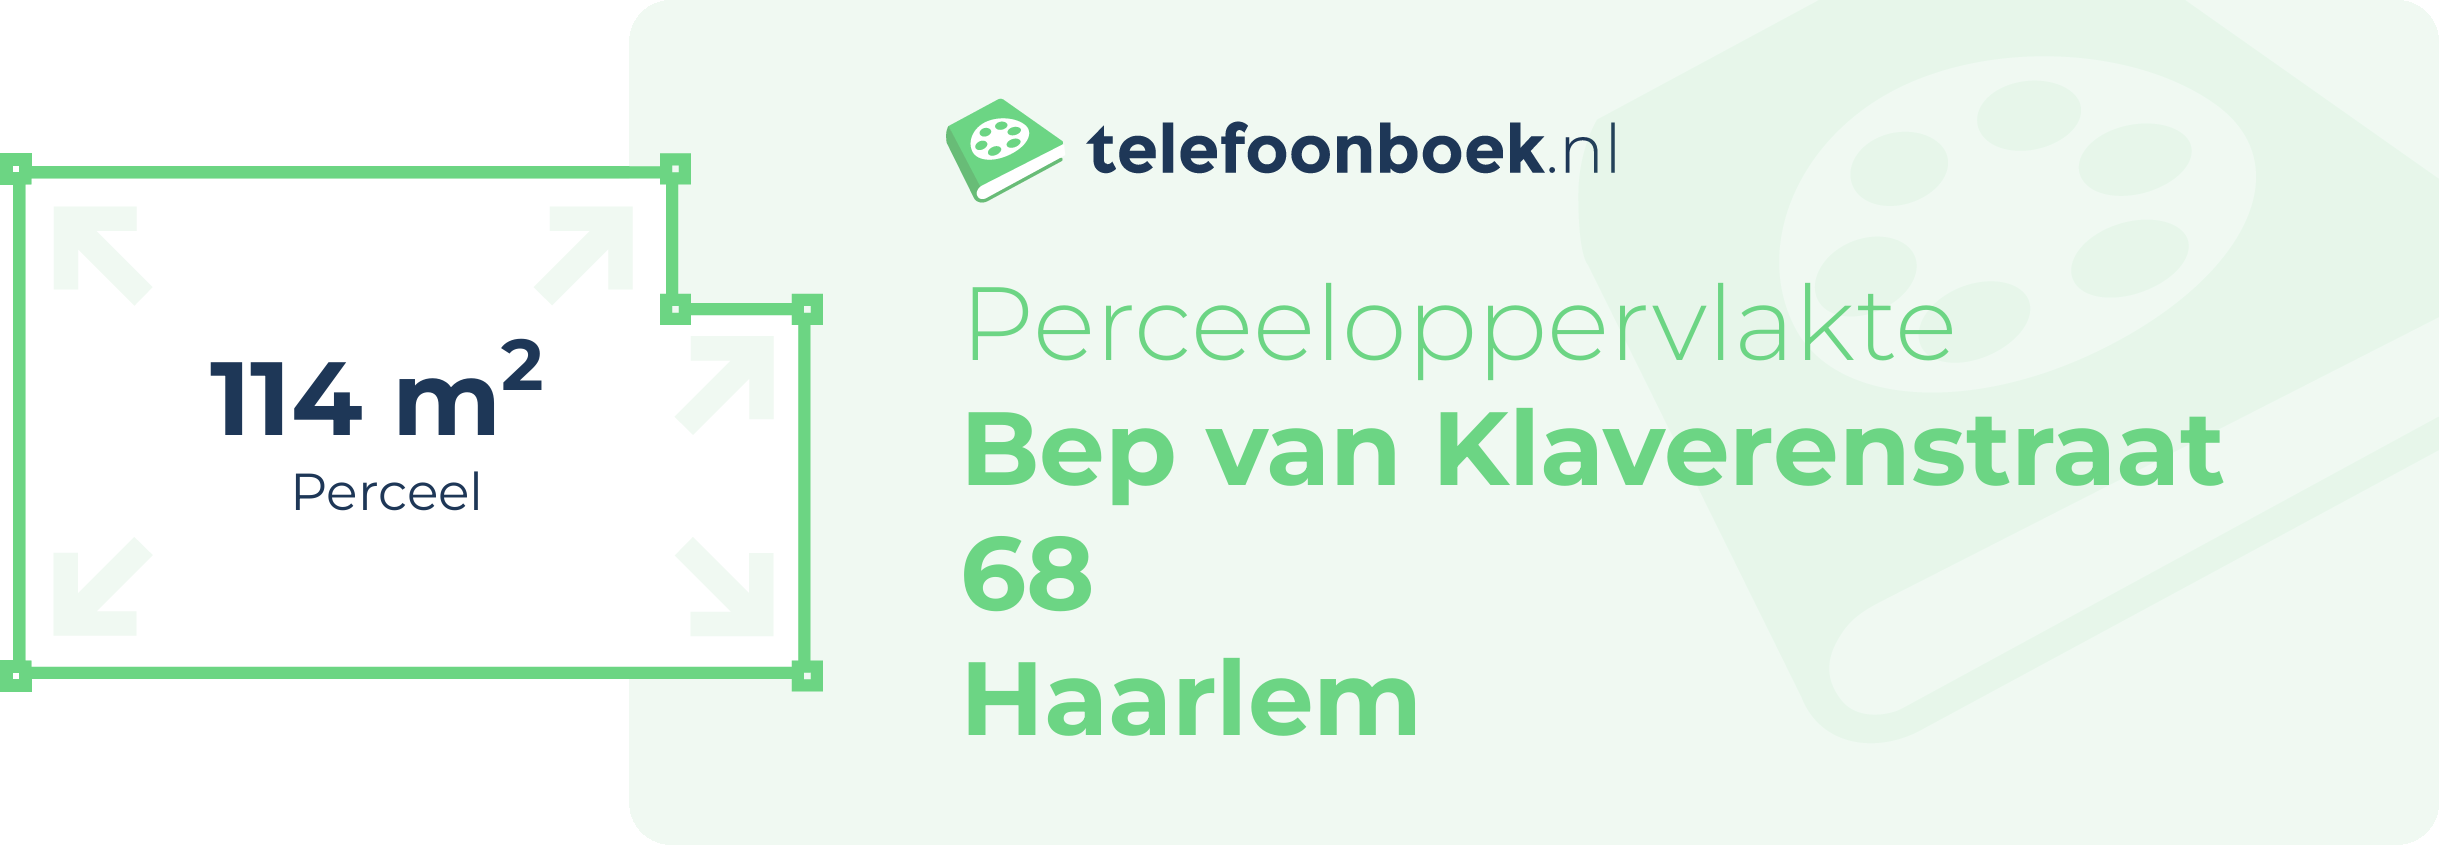 Perceeloppervlakte Bep Van Klaverenstraat 68 Haarlem